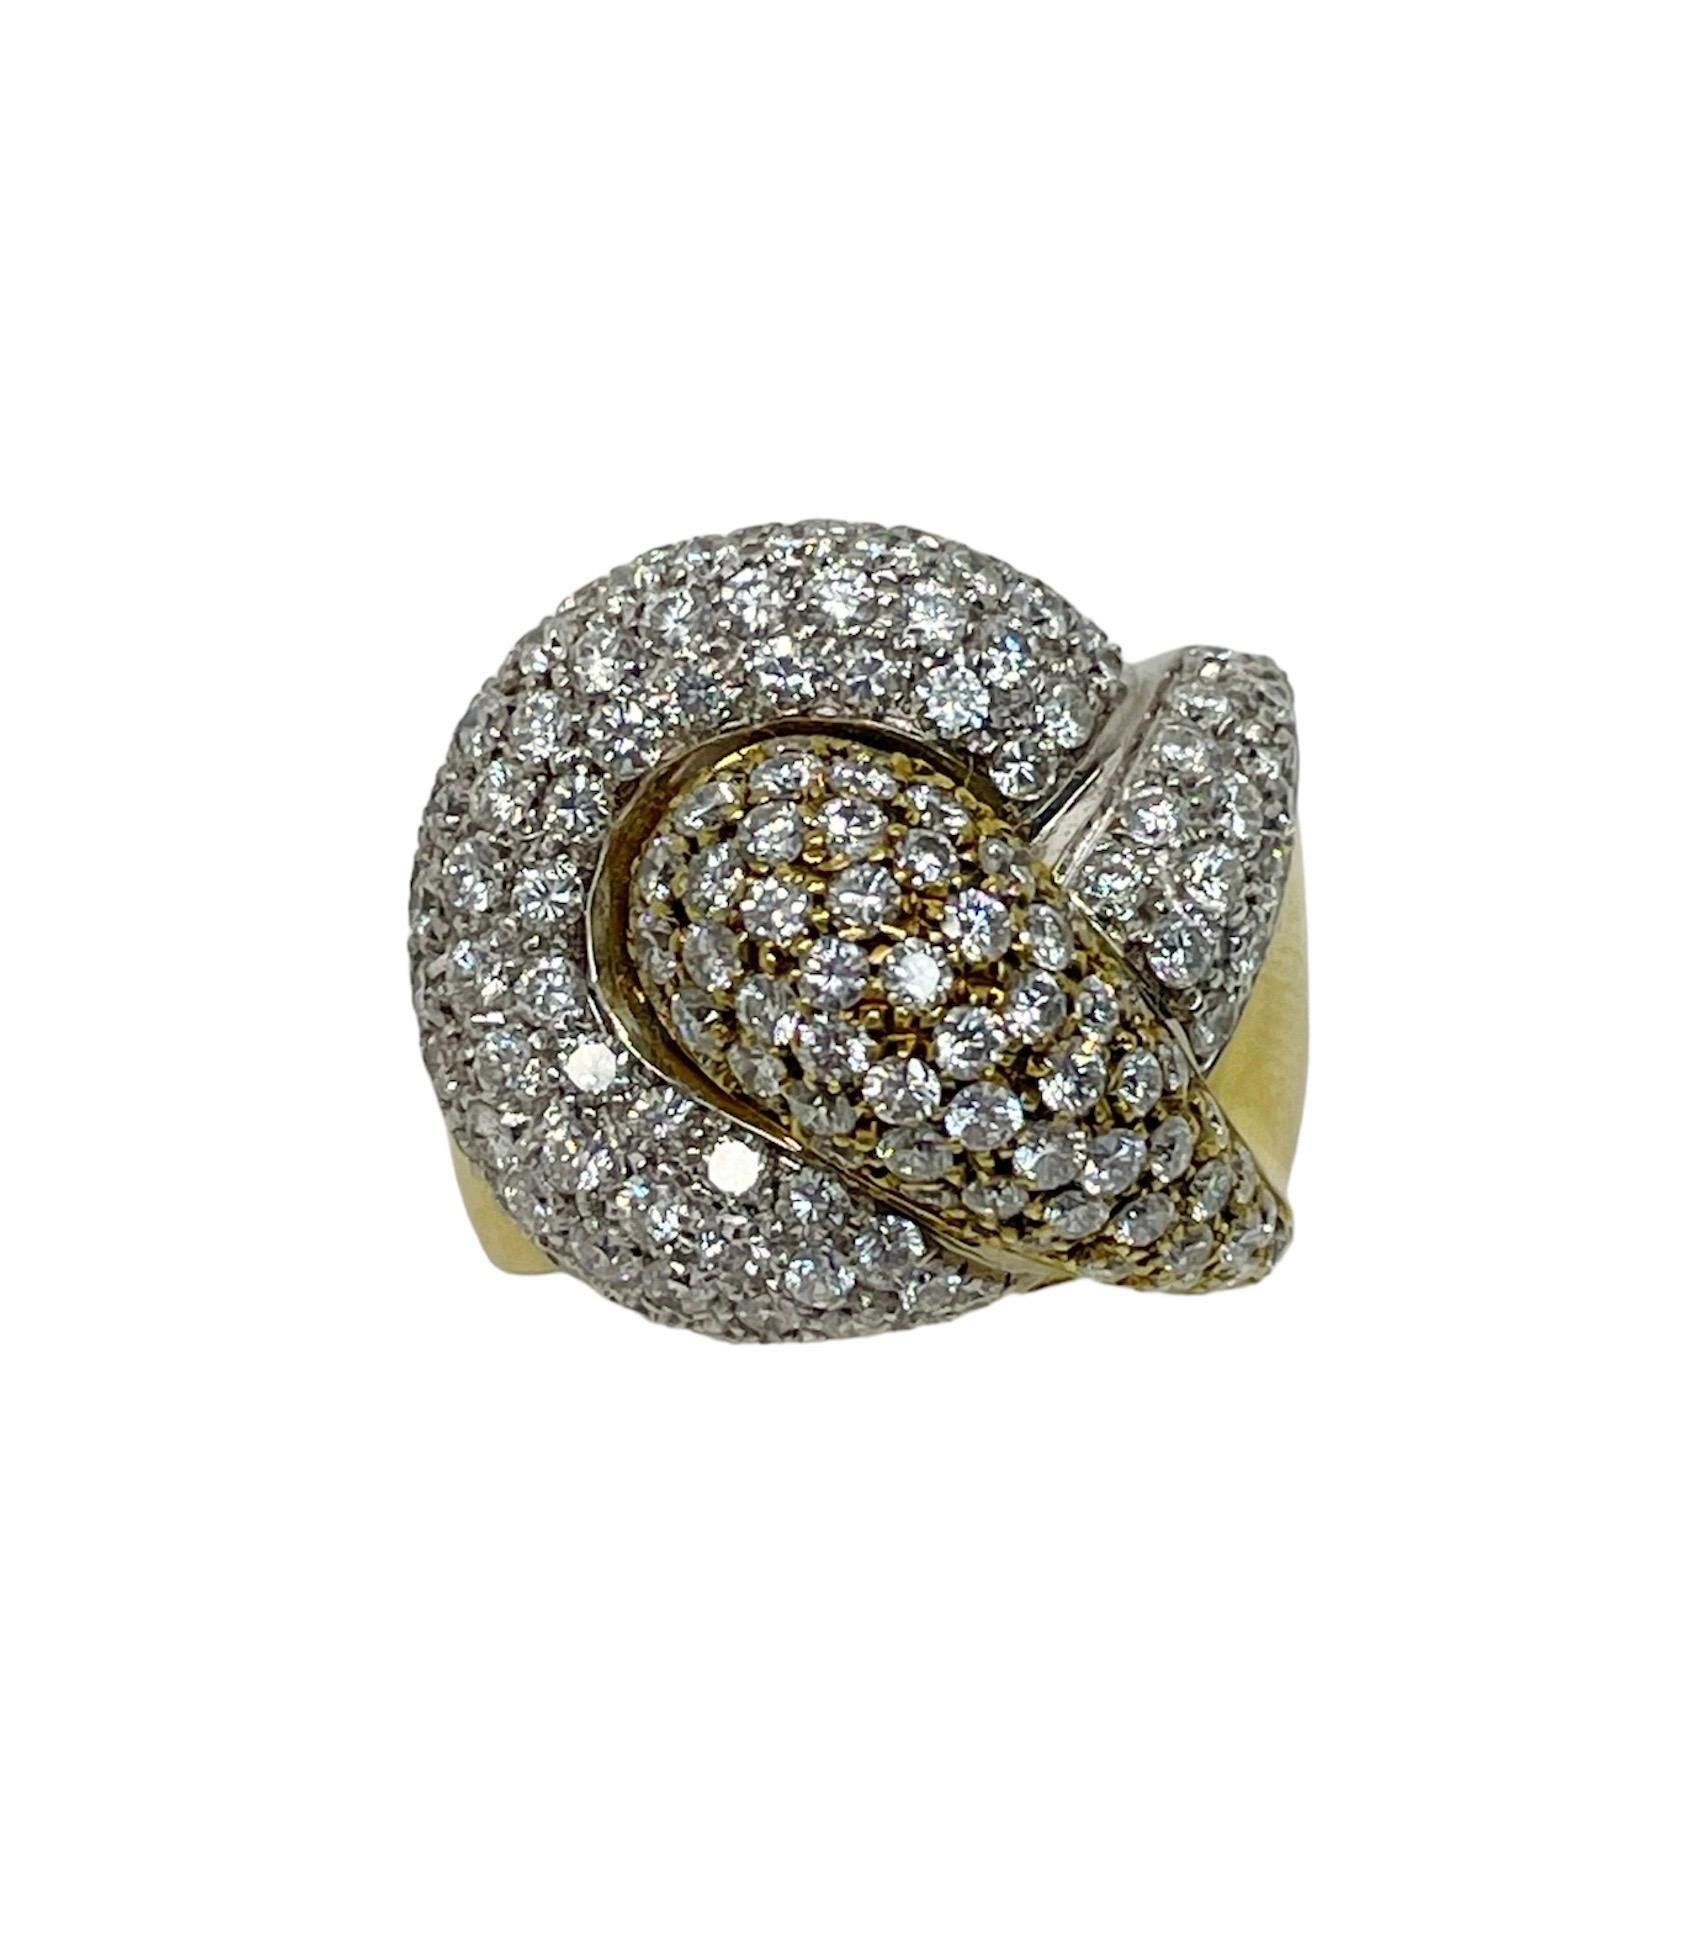 Dieser tolle Ring mit Knotenmotiv enthält 146 runde Diamanten im Brillantschliff von höchster Qualität mit einem Gesamtgewicht von ca. 3,75 Karat. Perfekter Statement-Ring!

Ring Größe 7 1/4
MATERIAL: Bicolor 18 Karat Gold
Gewicht: 18,45